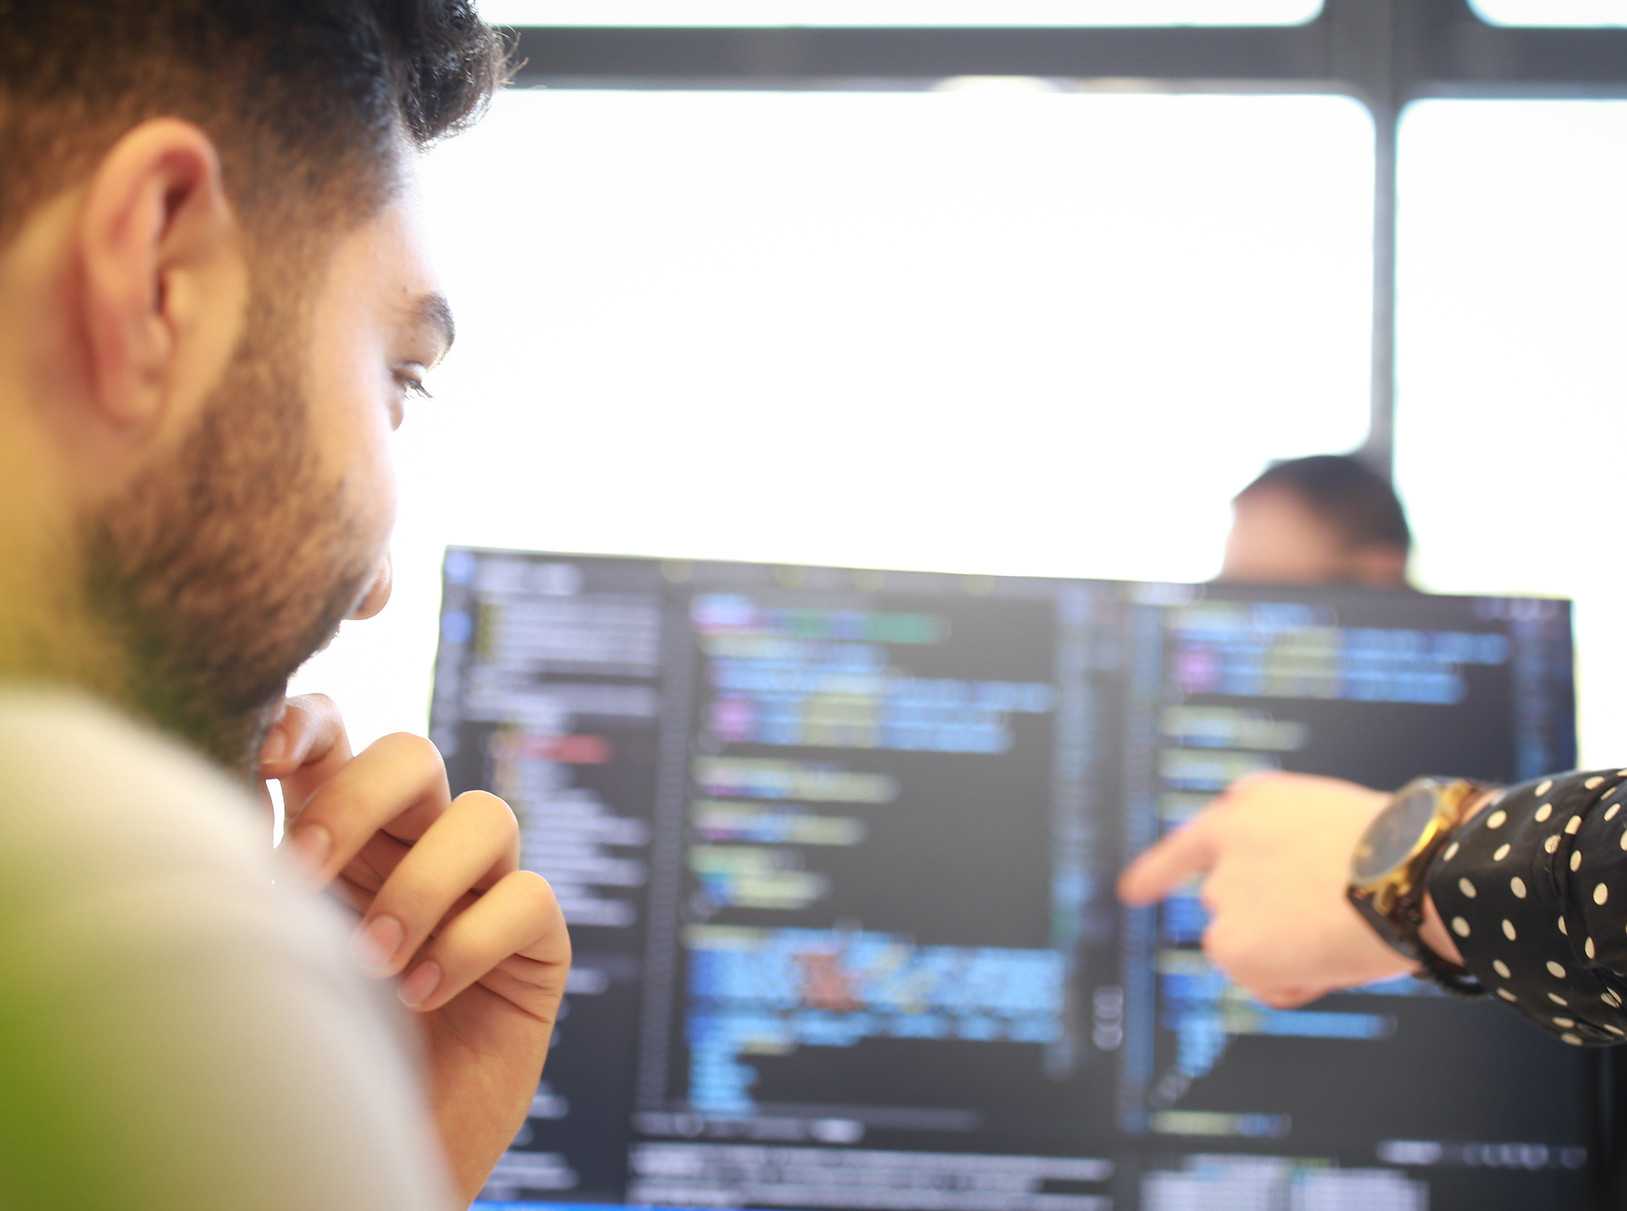 Programmierer schaut auf Monitor mit Quellcode. Eine Kollege zeigt auf den Monitor.